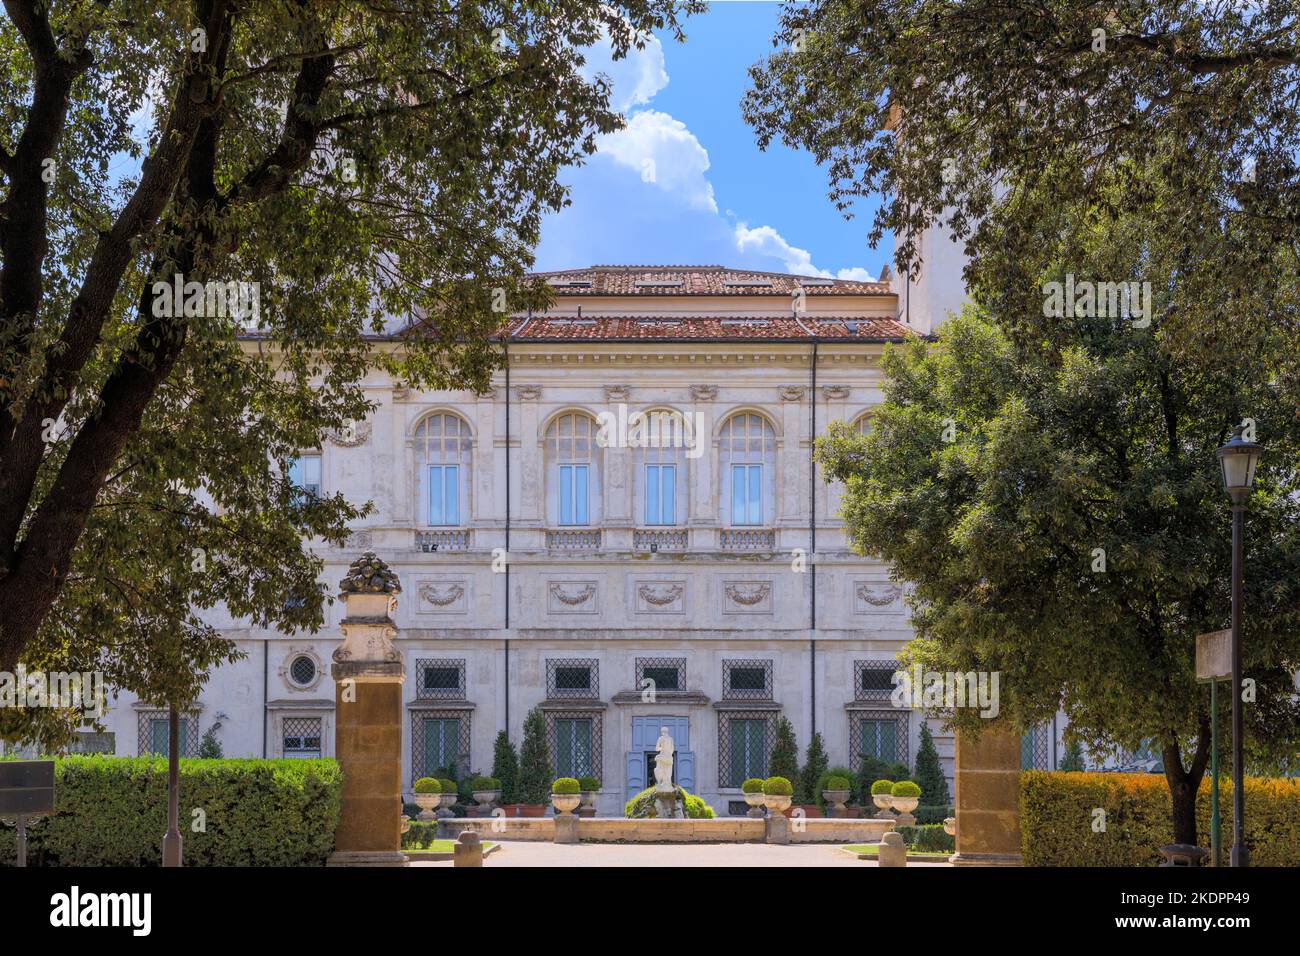 Vue sur la façade arrière de la Galleria Borghese à l'intérieur du parc public de la Villa Borghese à Rome, en Italie. Banque D'Images